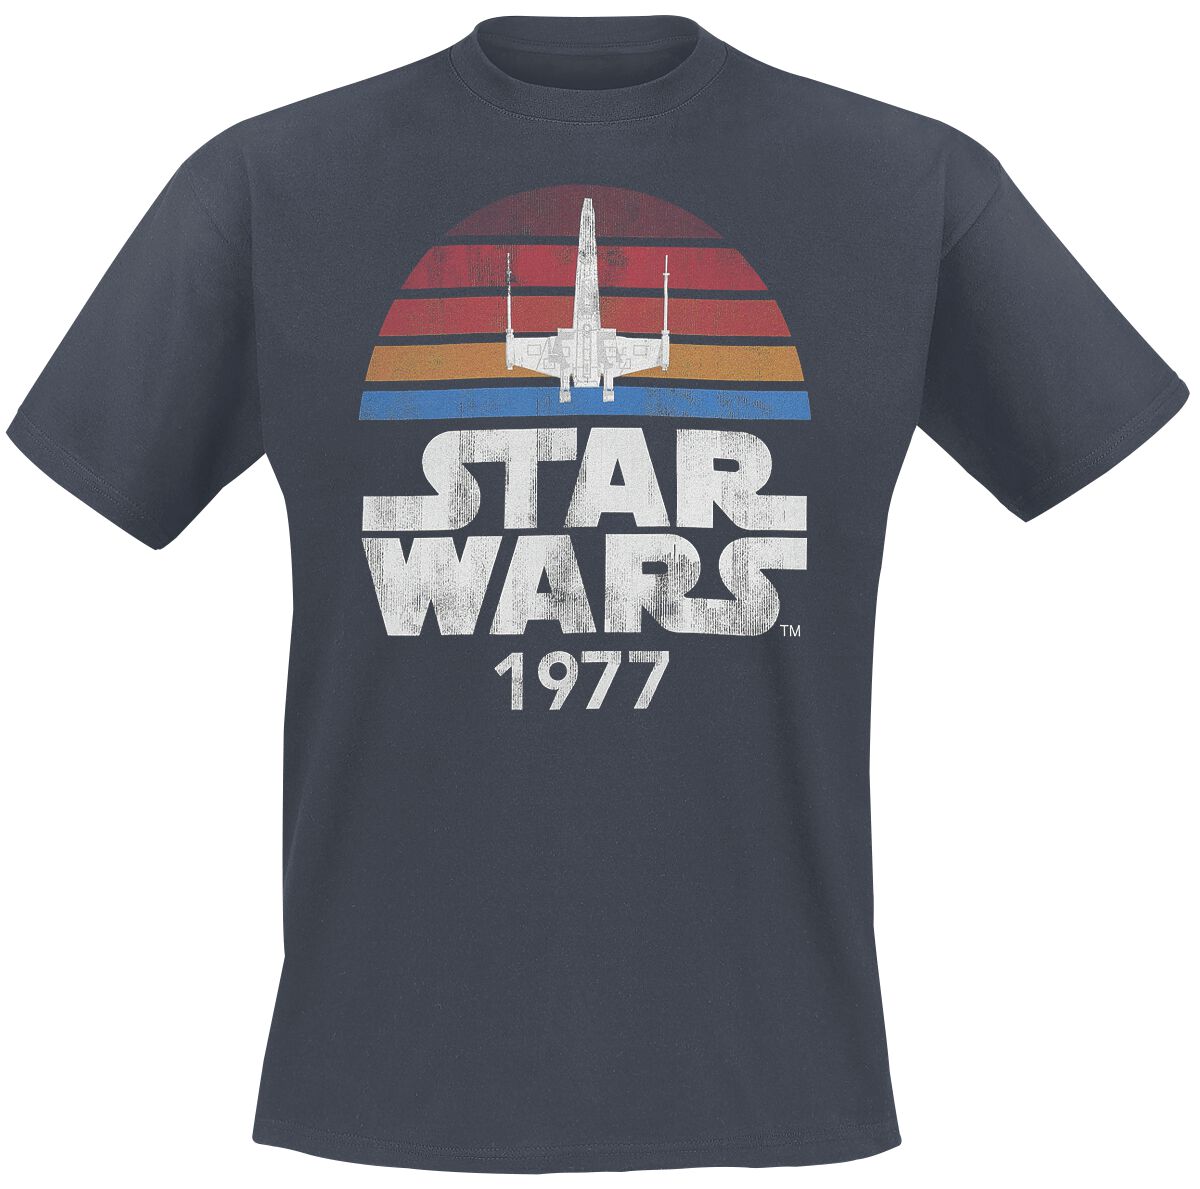 Star Wars T-Shirt - Since 1977 - S bis XXL - für Männer - Größe XL - anthrazit  - Lizenzierter Fanartikel